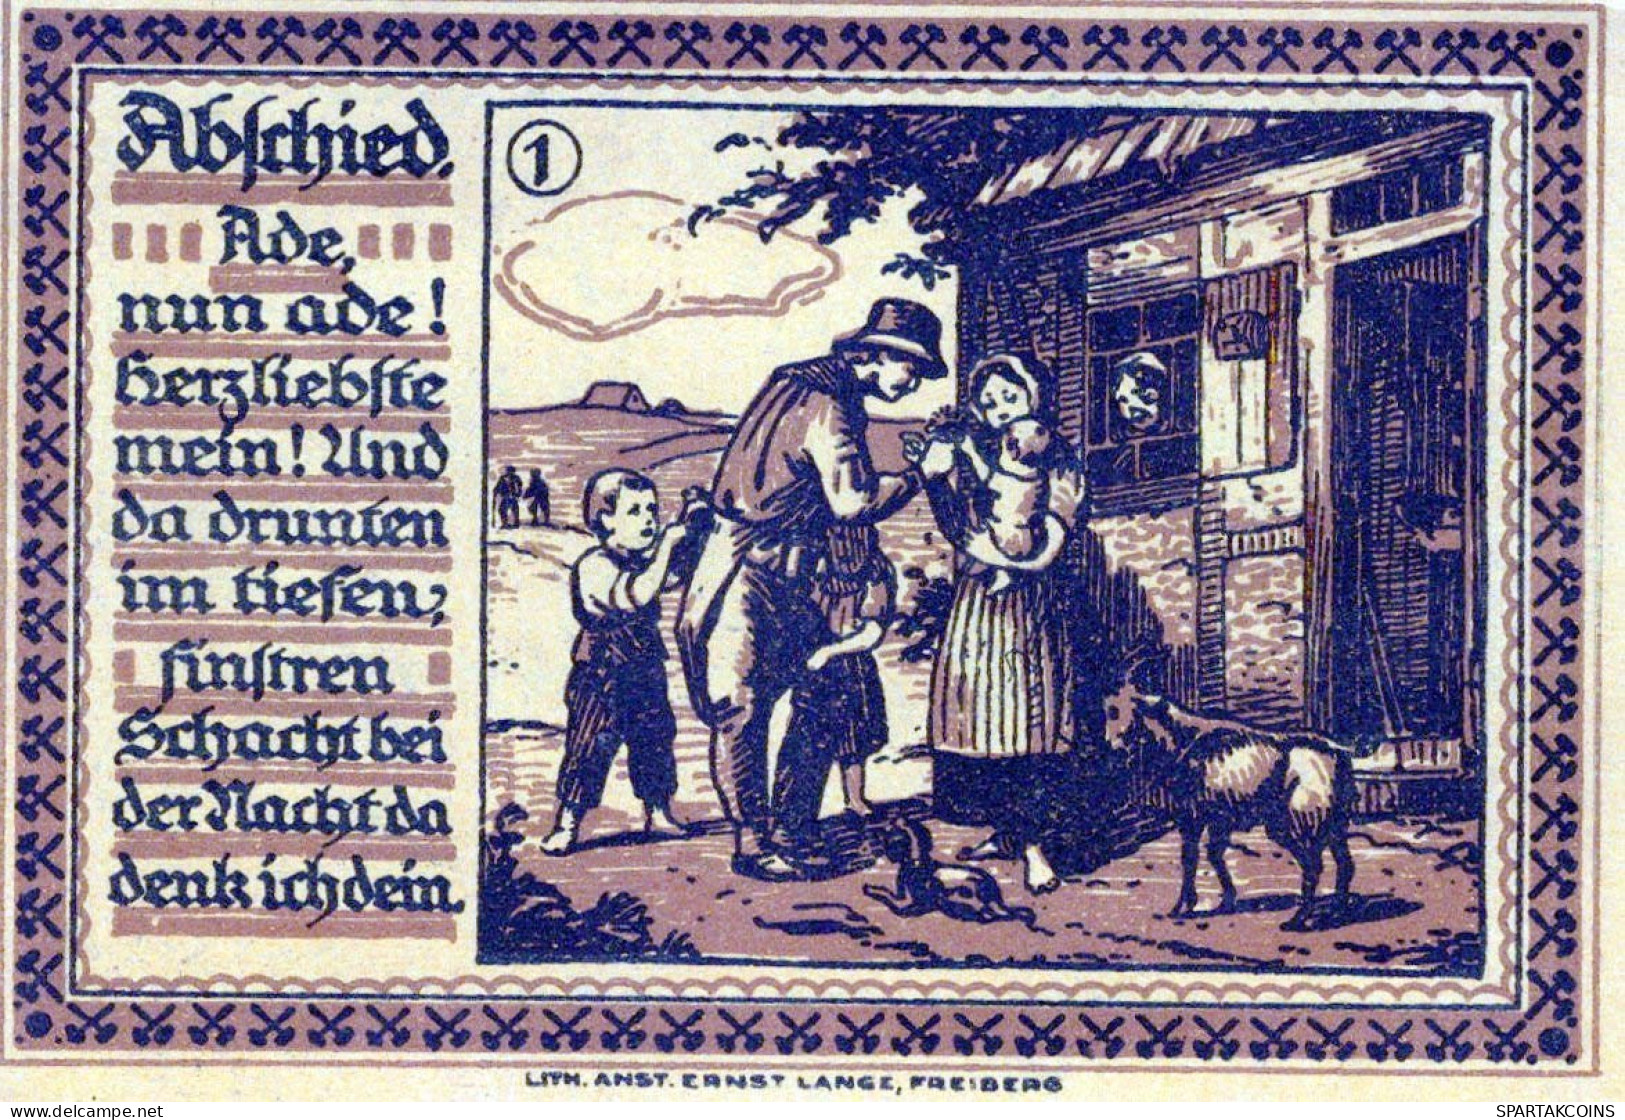 75 PFENNIG 1921 Stadt FREIBERG Saxony UNC DEUTSCHLAND Notgeld Banknote #PA589 - [11] Emisiones Locales